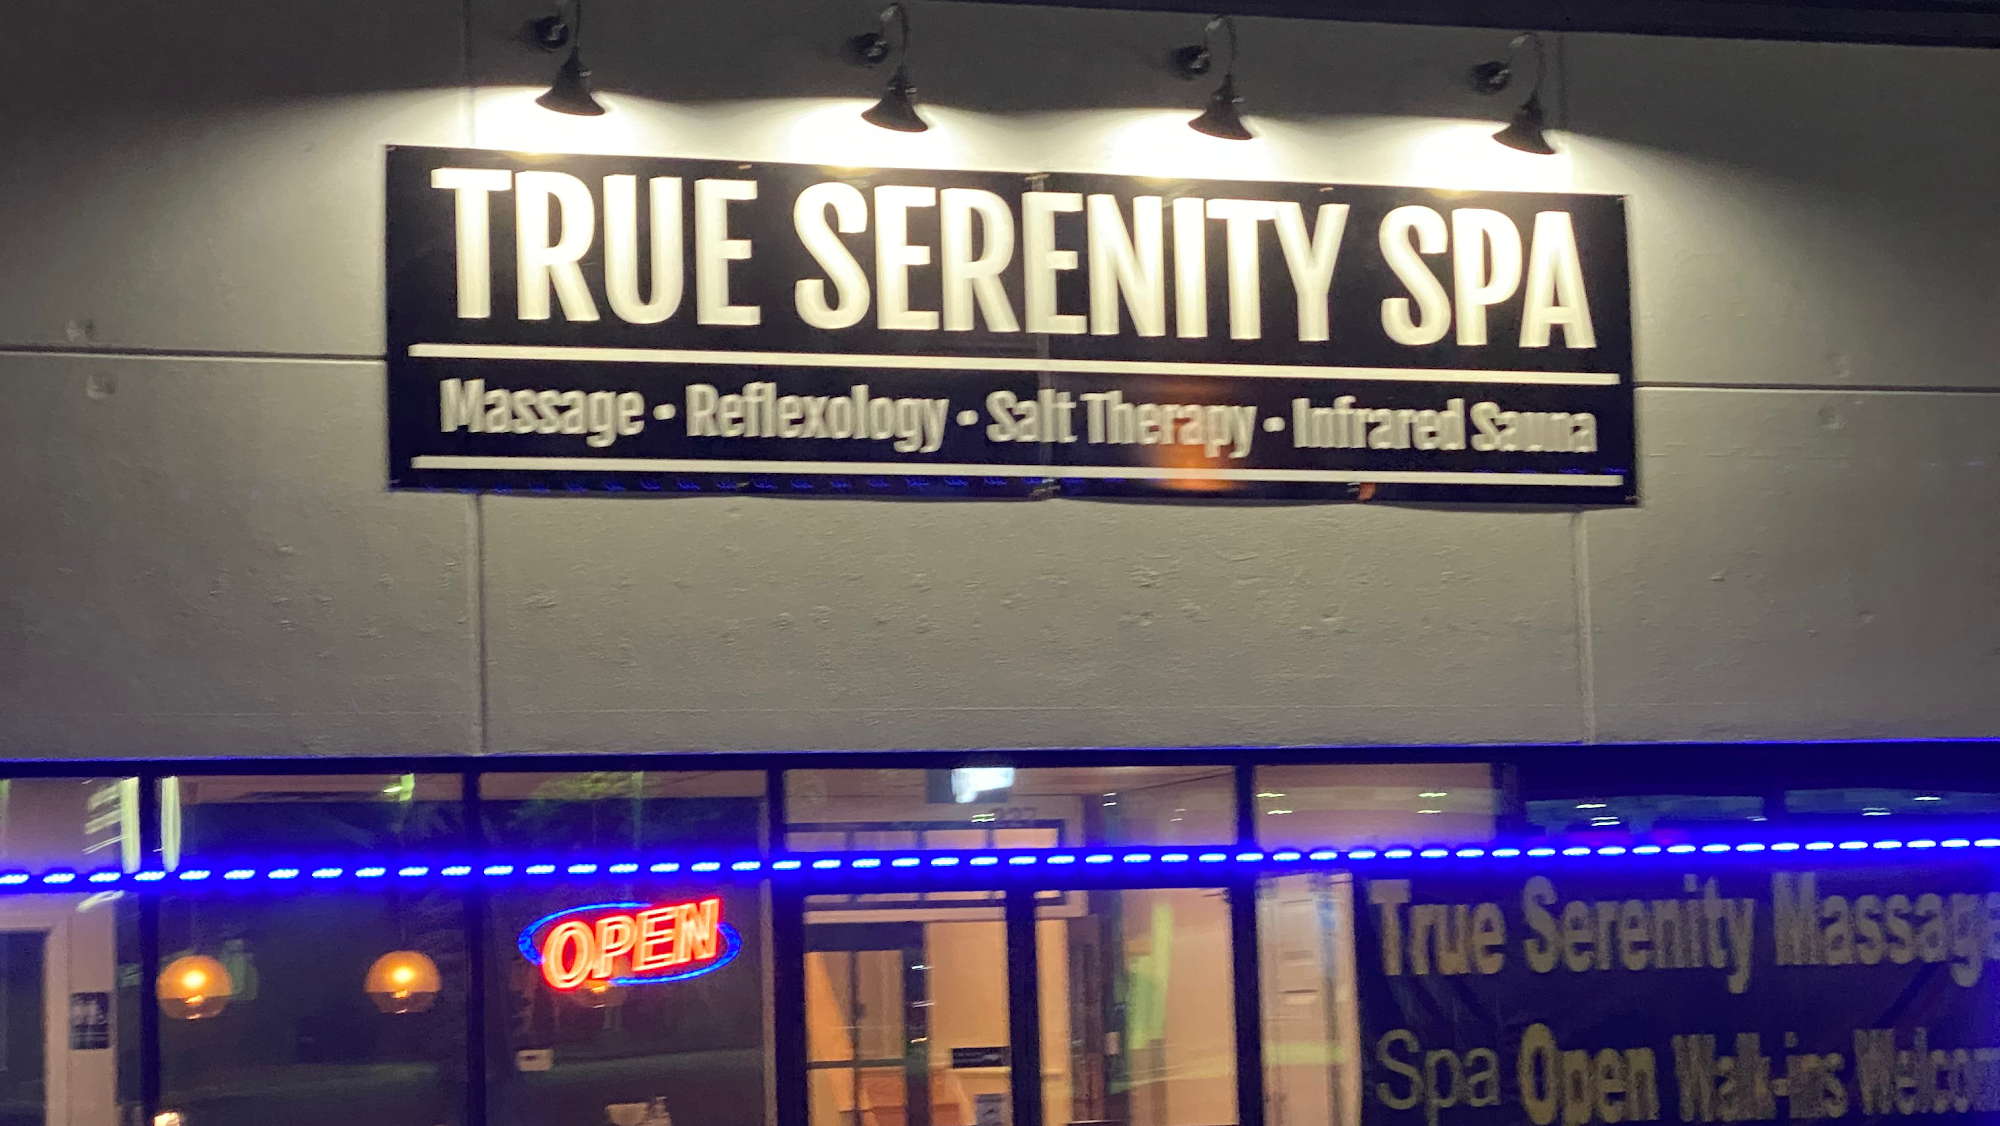 True Serenity Spa